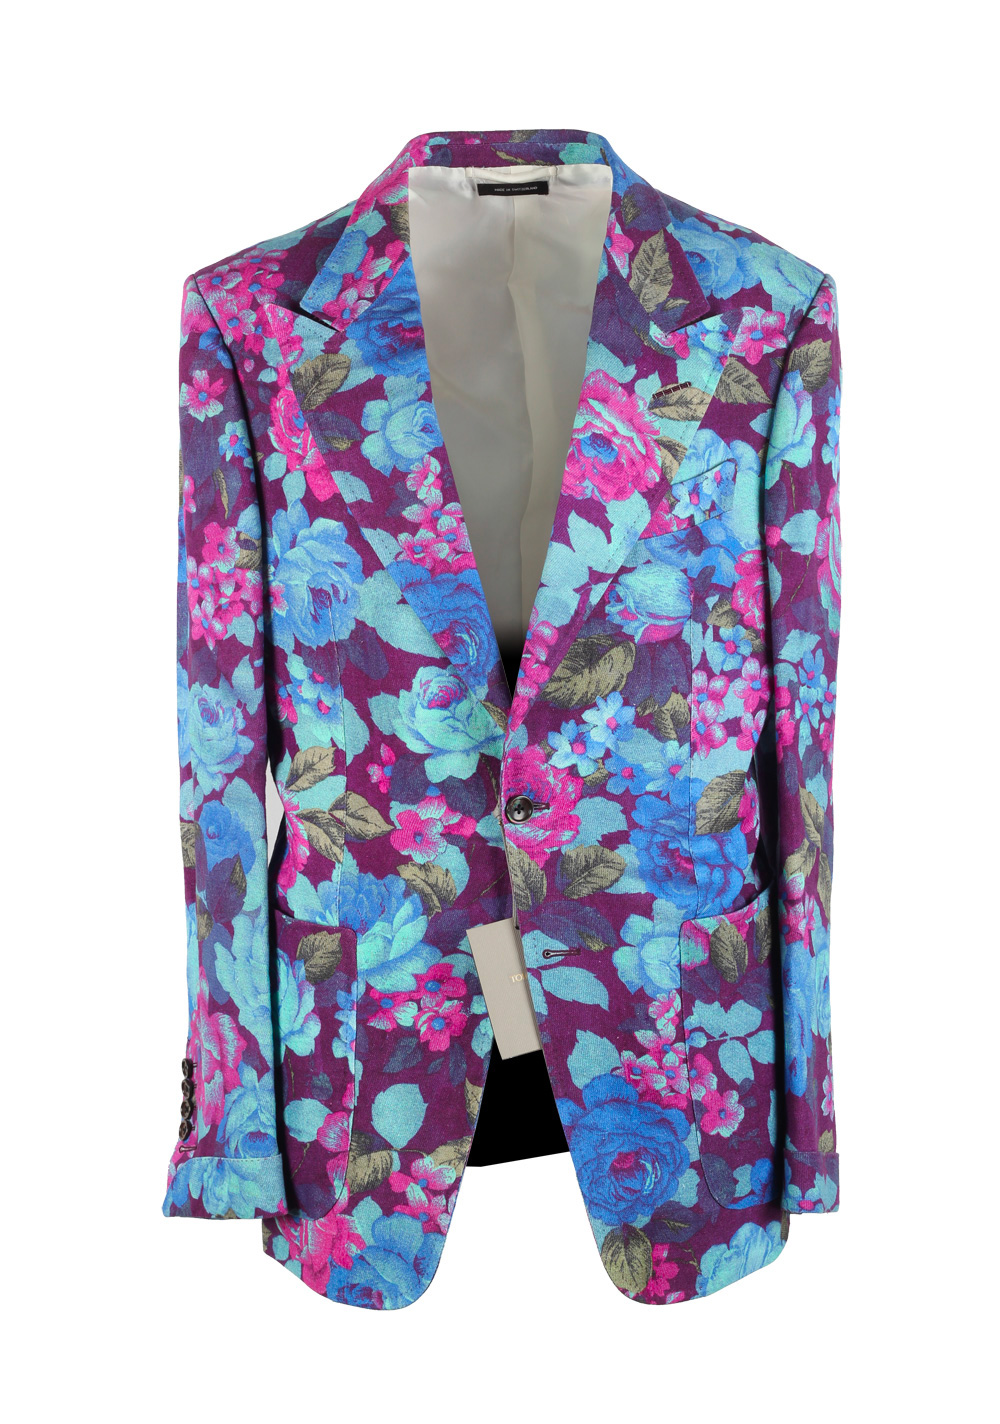 TOM FORD Shelton Pink Floral Sport Coat Size 48 / 38R U.S. In Linen ...